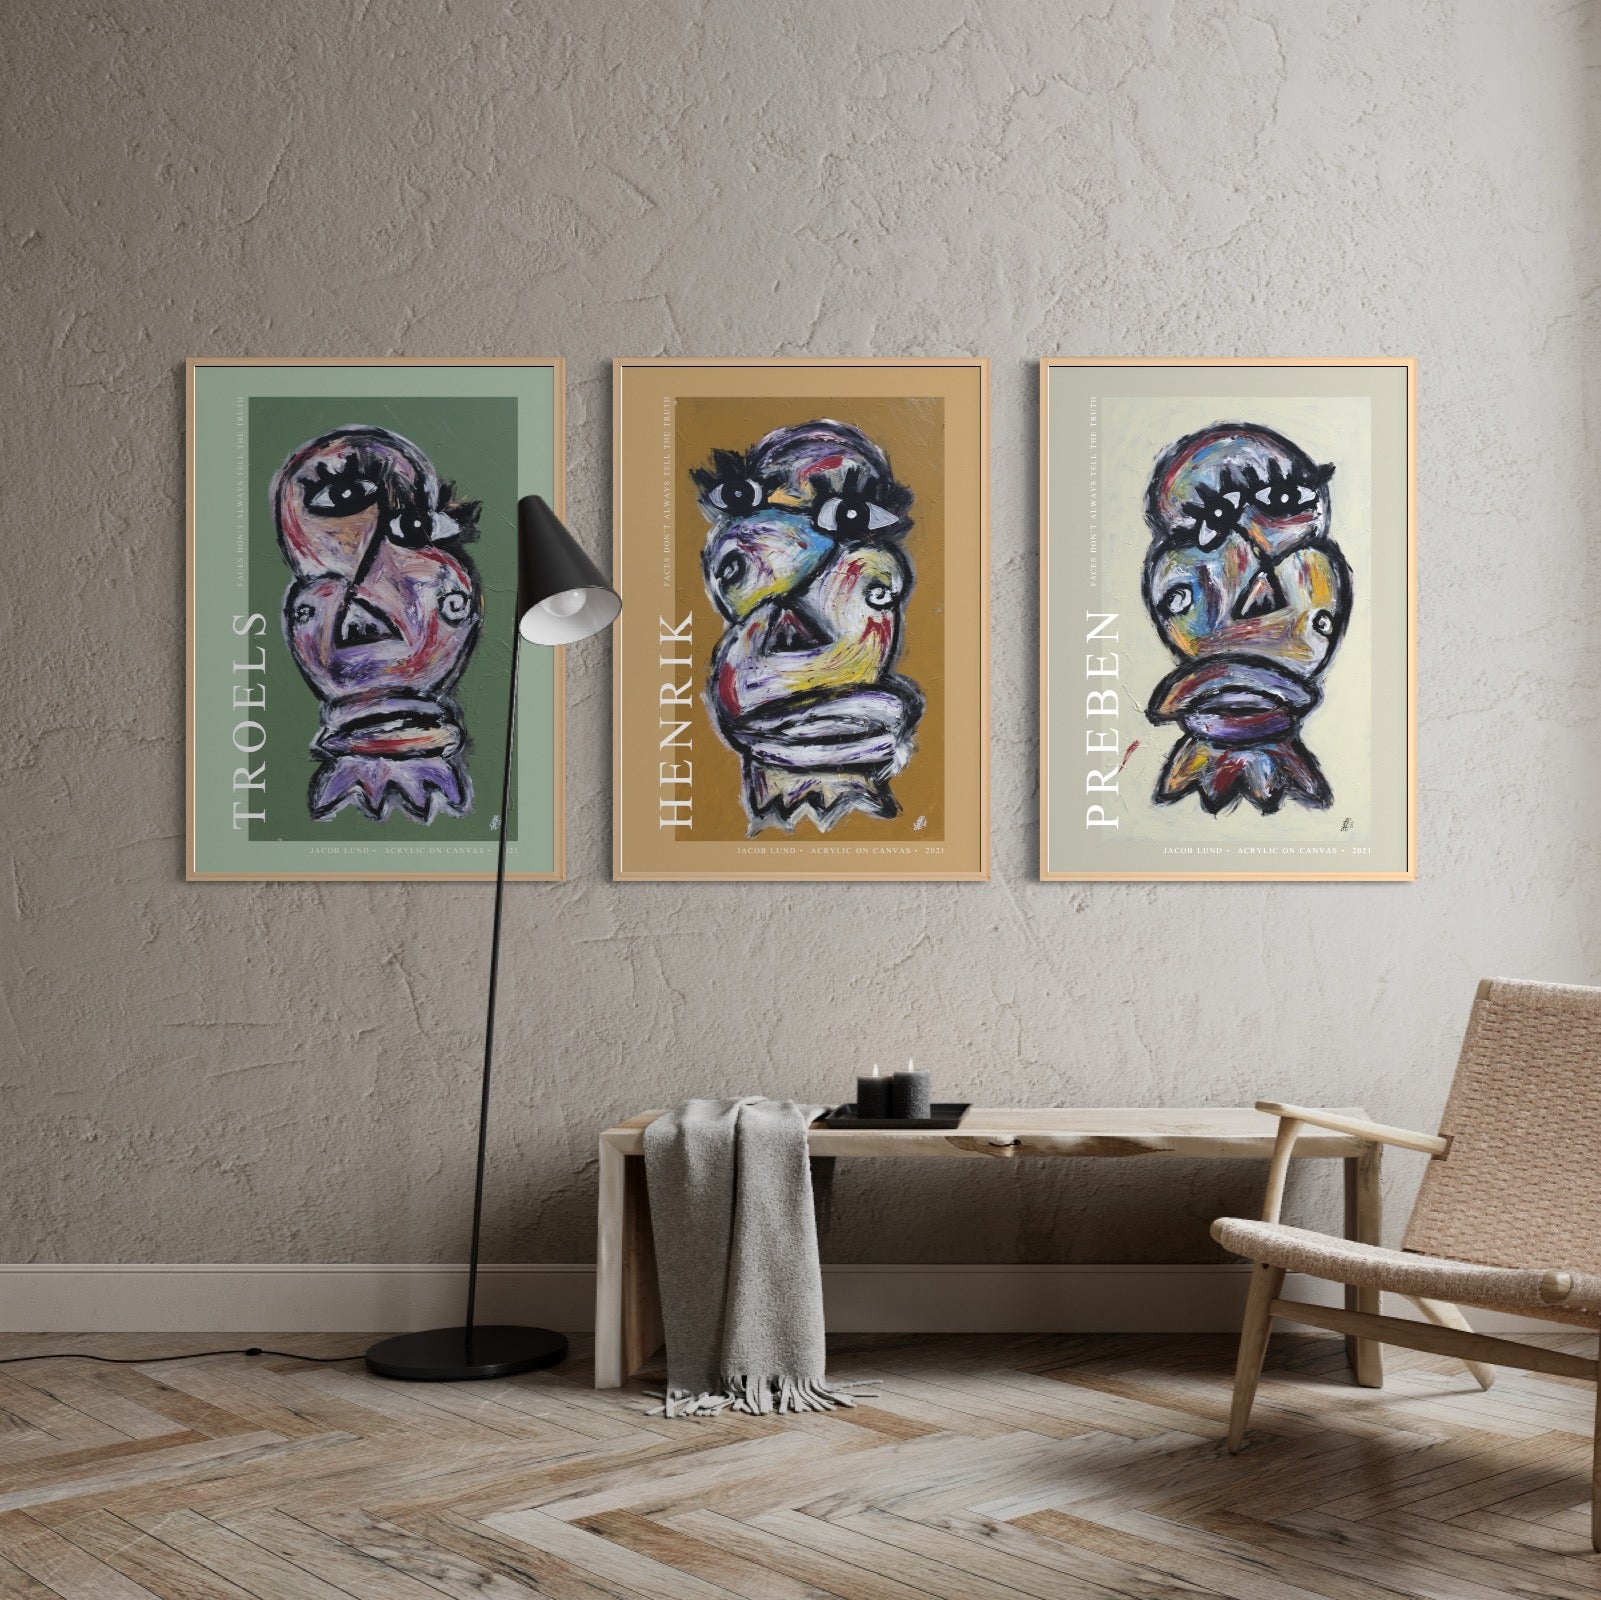 Art Wall 2 (3 Posters) - Poster troels, Poster henrik, Poster preben